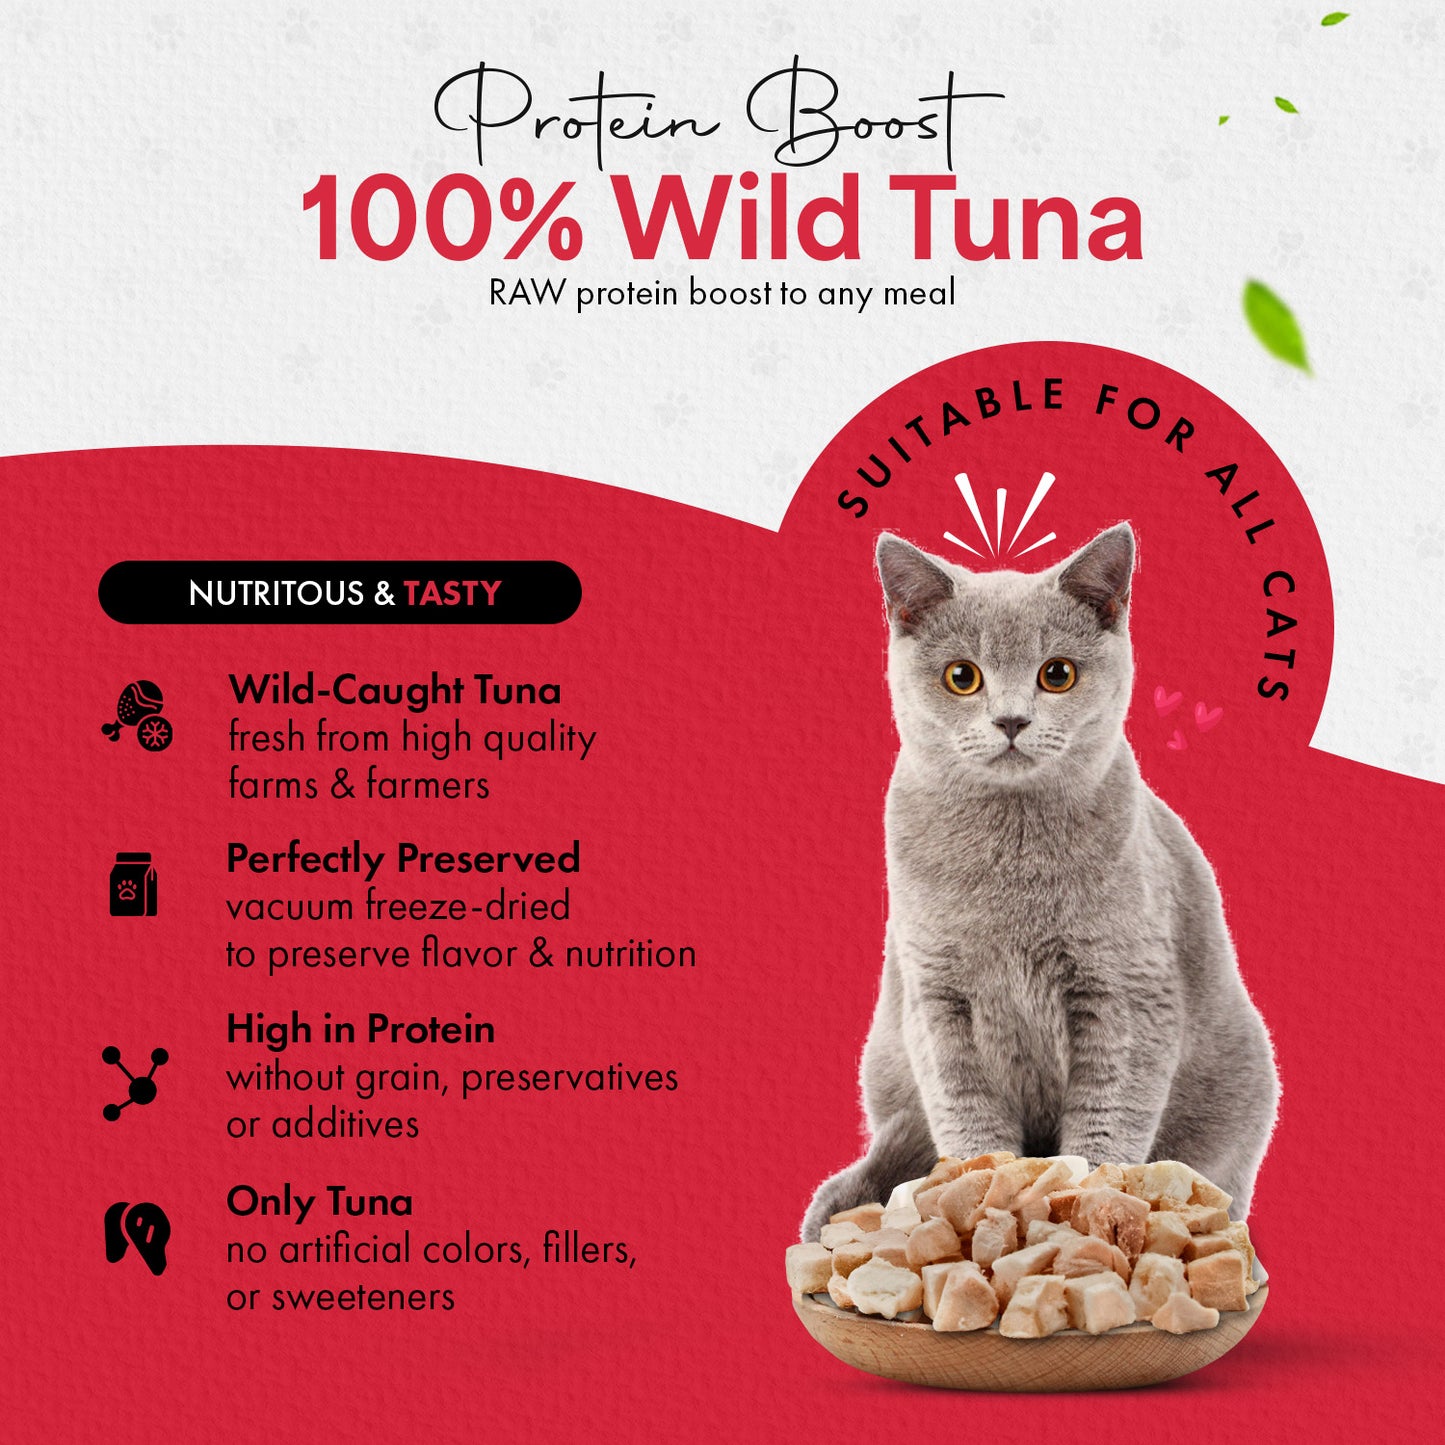 Freeze Dried Cat Treats Tuna (1.75oz-3.5oz)